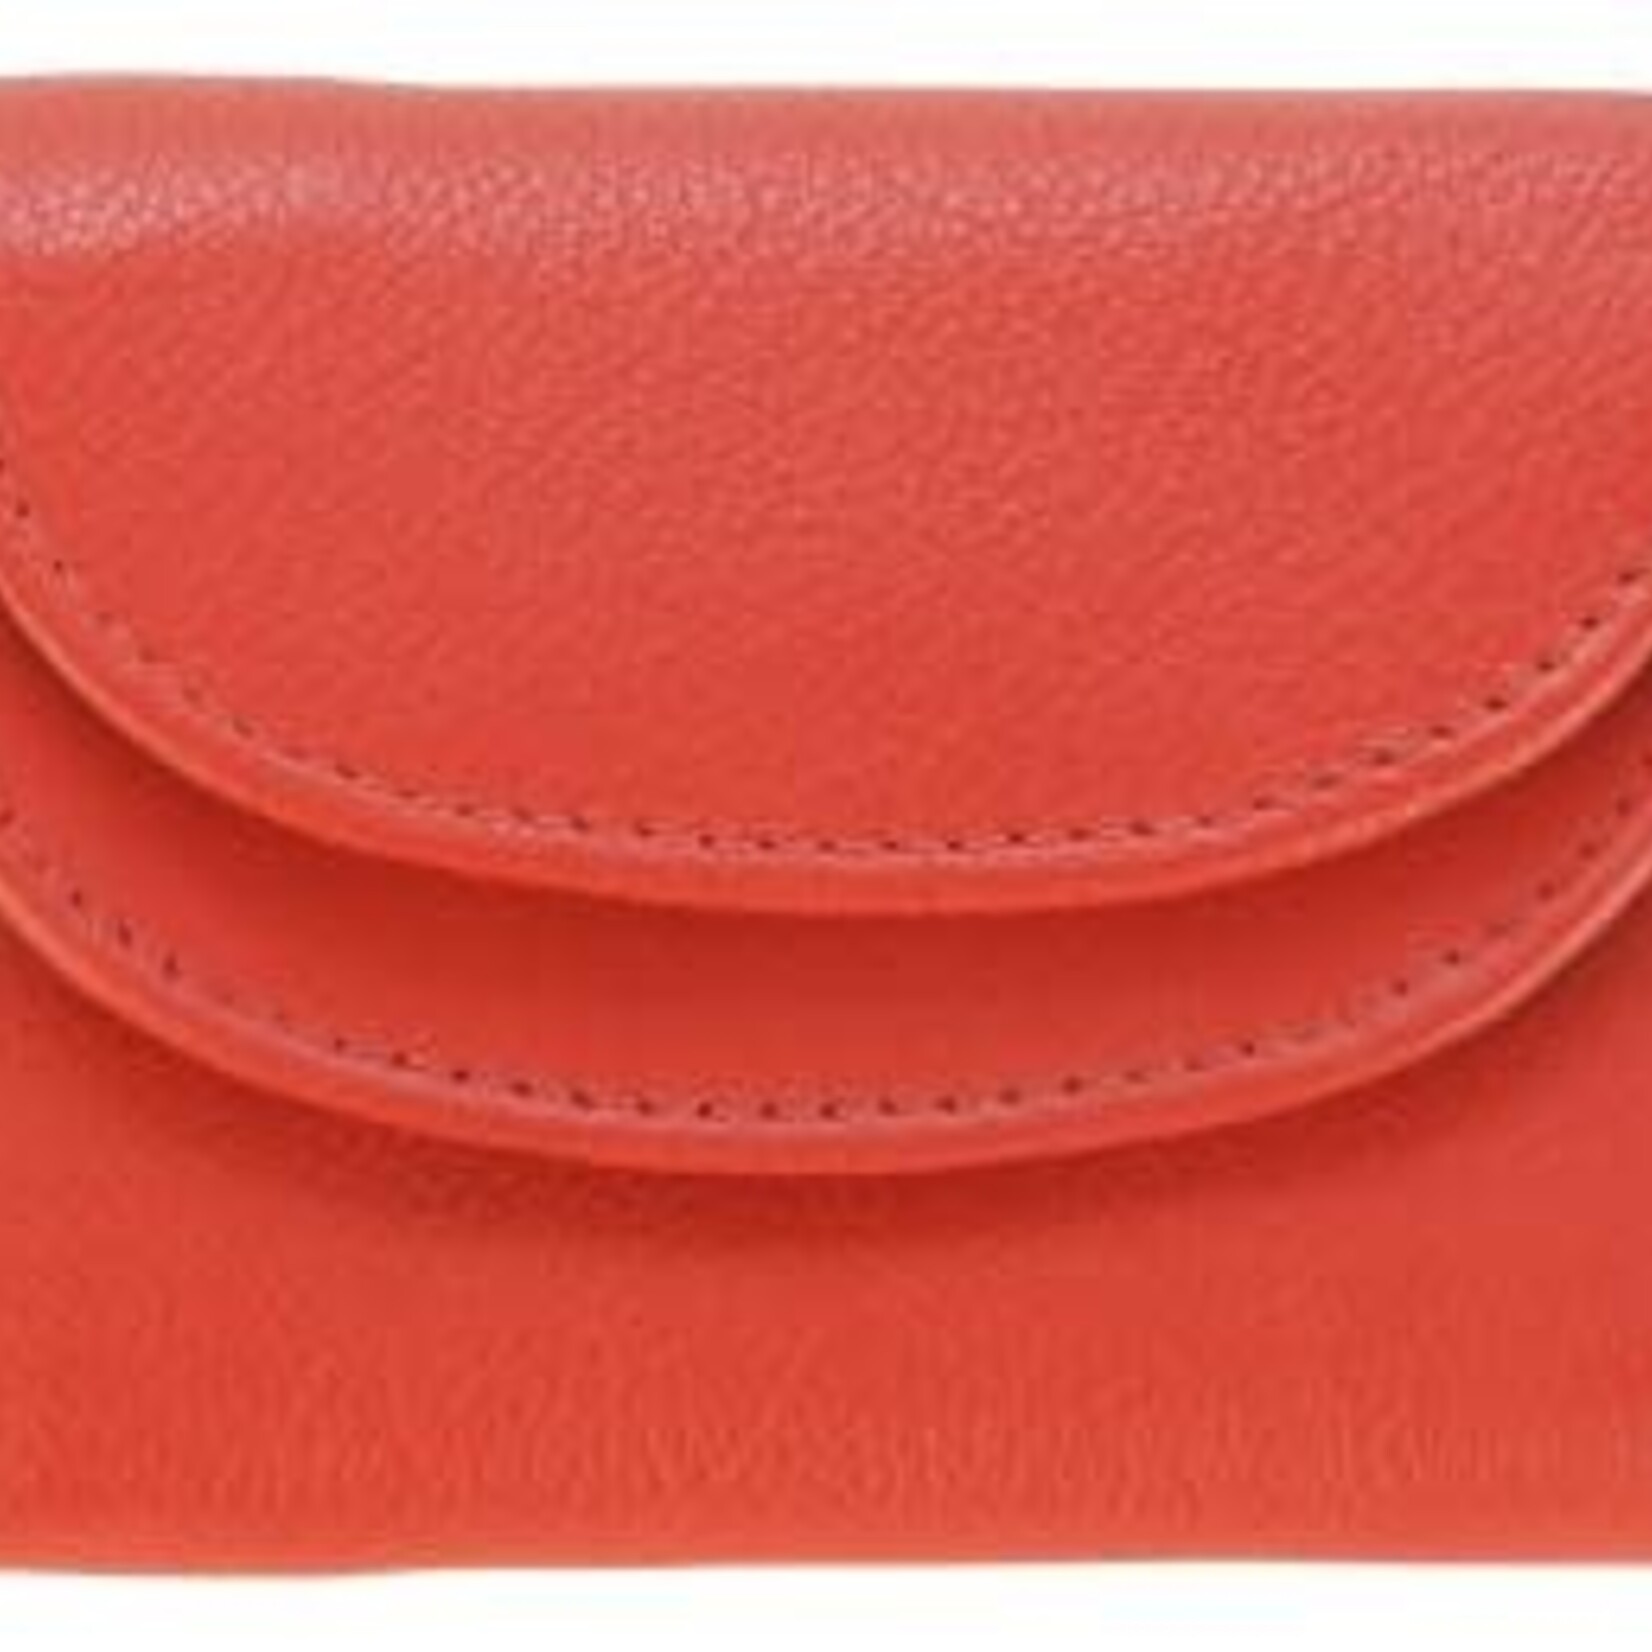 Franco Bonini 2905 OrangeMulti - Ladies Wallet - Atlas Handbag Co